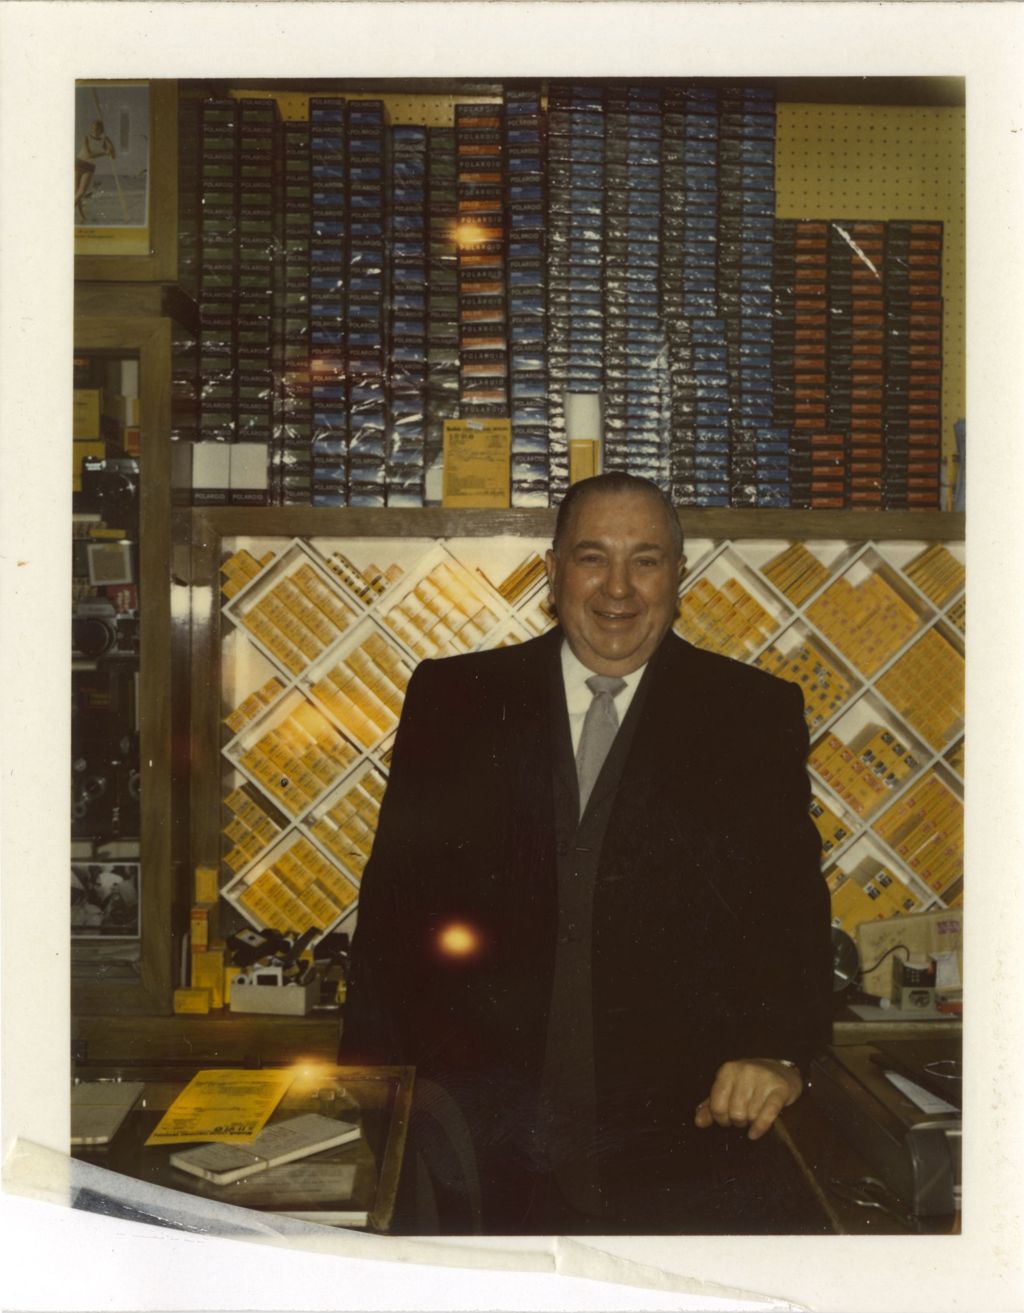 Miniature of Richard J. Daley at a camera counter